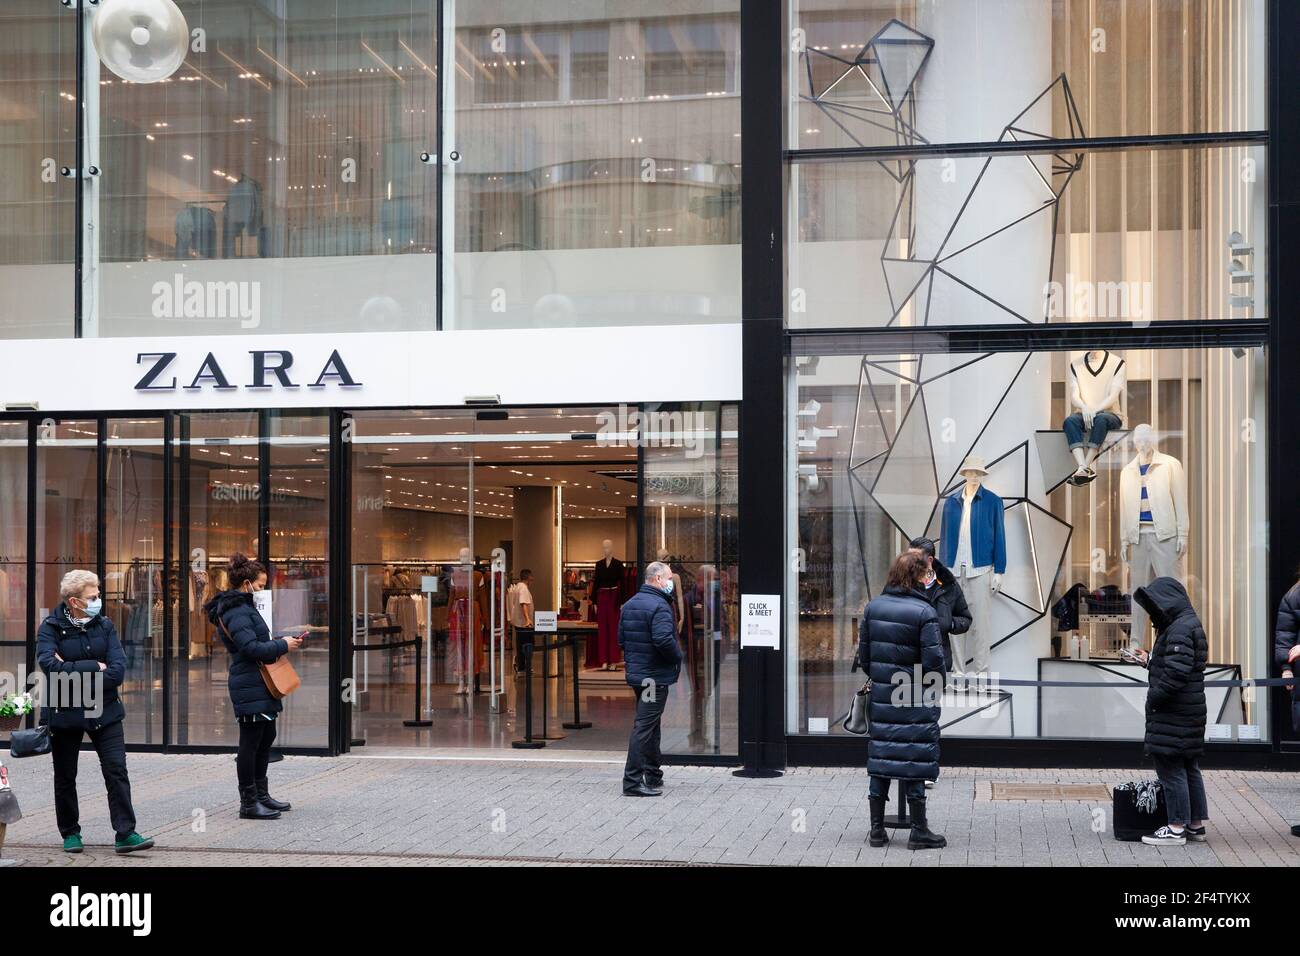 Corona Lockdown, März 18th. 2021. Modegeschäft Zara in der Schildergasse  warten Kunden darauf, die Ware, die sie online bestellt haben, abzuholen  Stockfotografie - Alamy